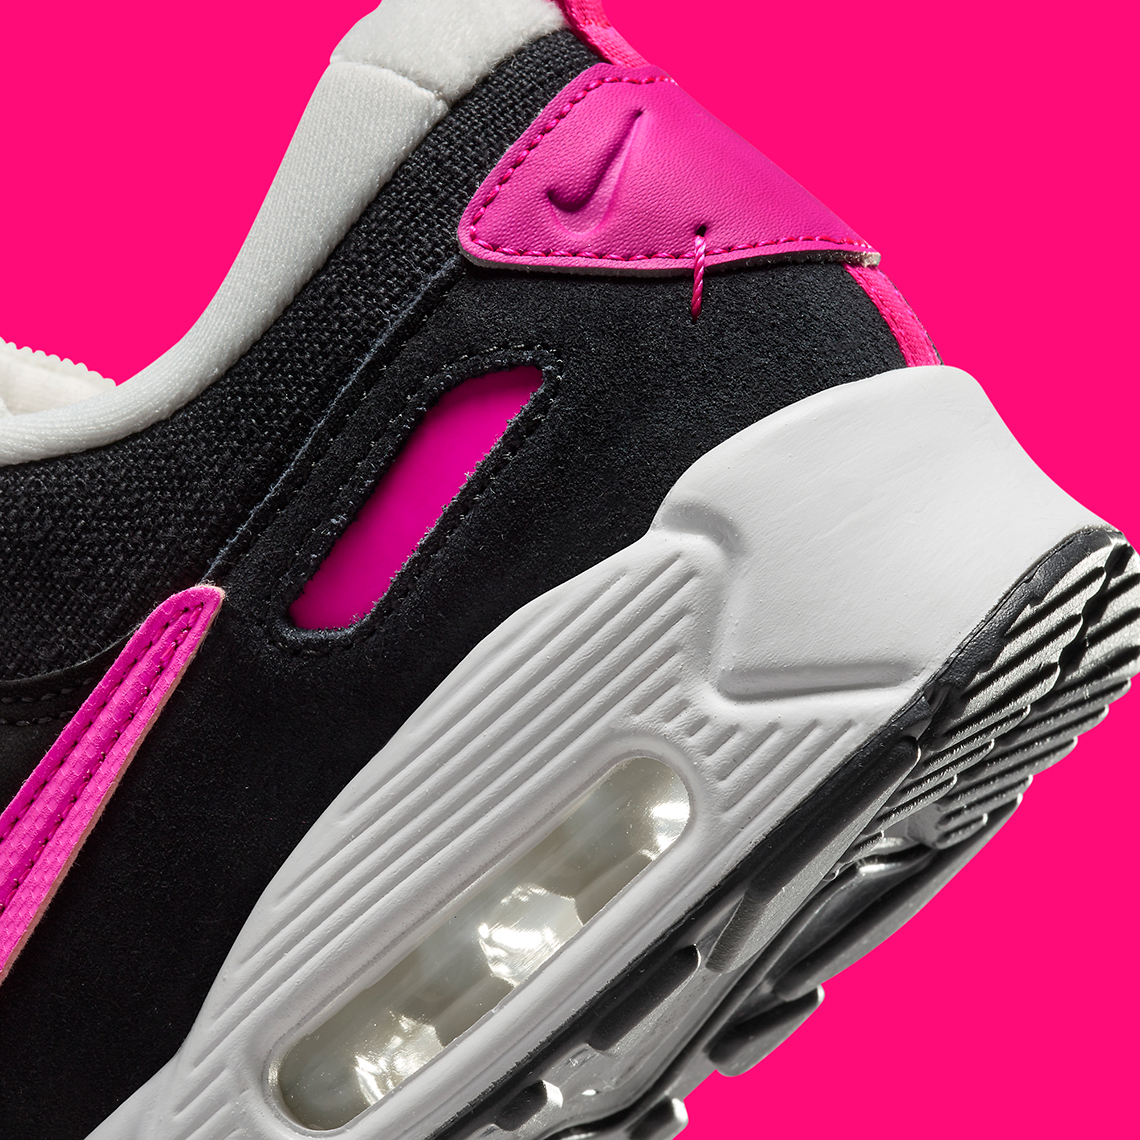 Nike nike free run girls patterns for kids printable Futura Black Hot Pink Dv7190 101 2